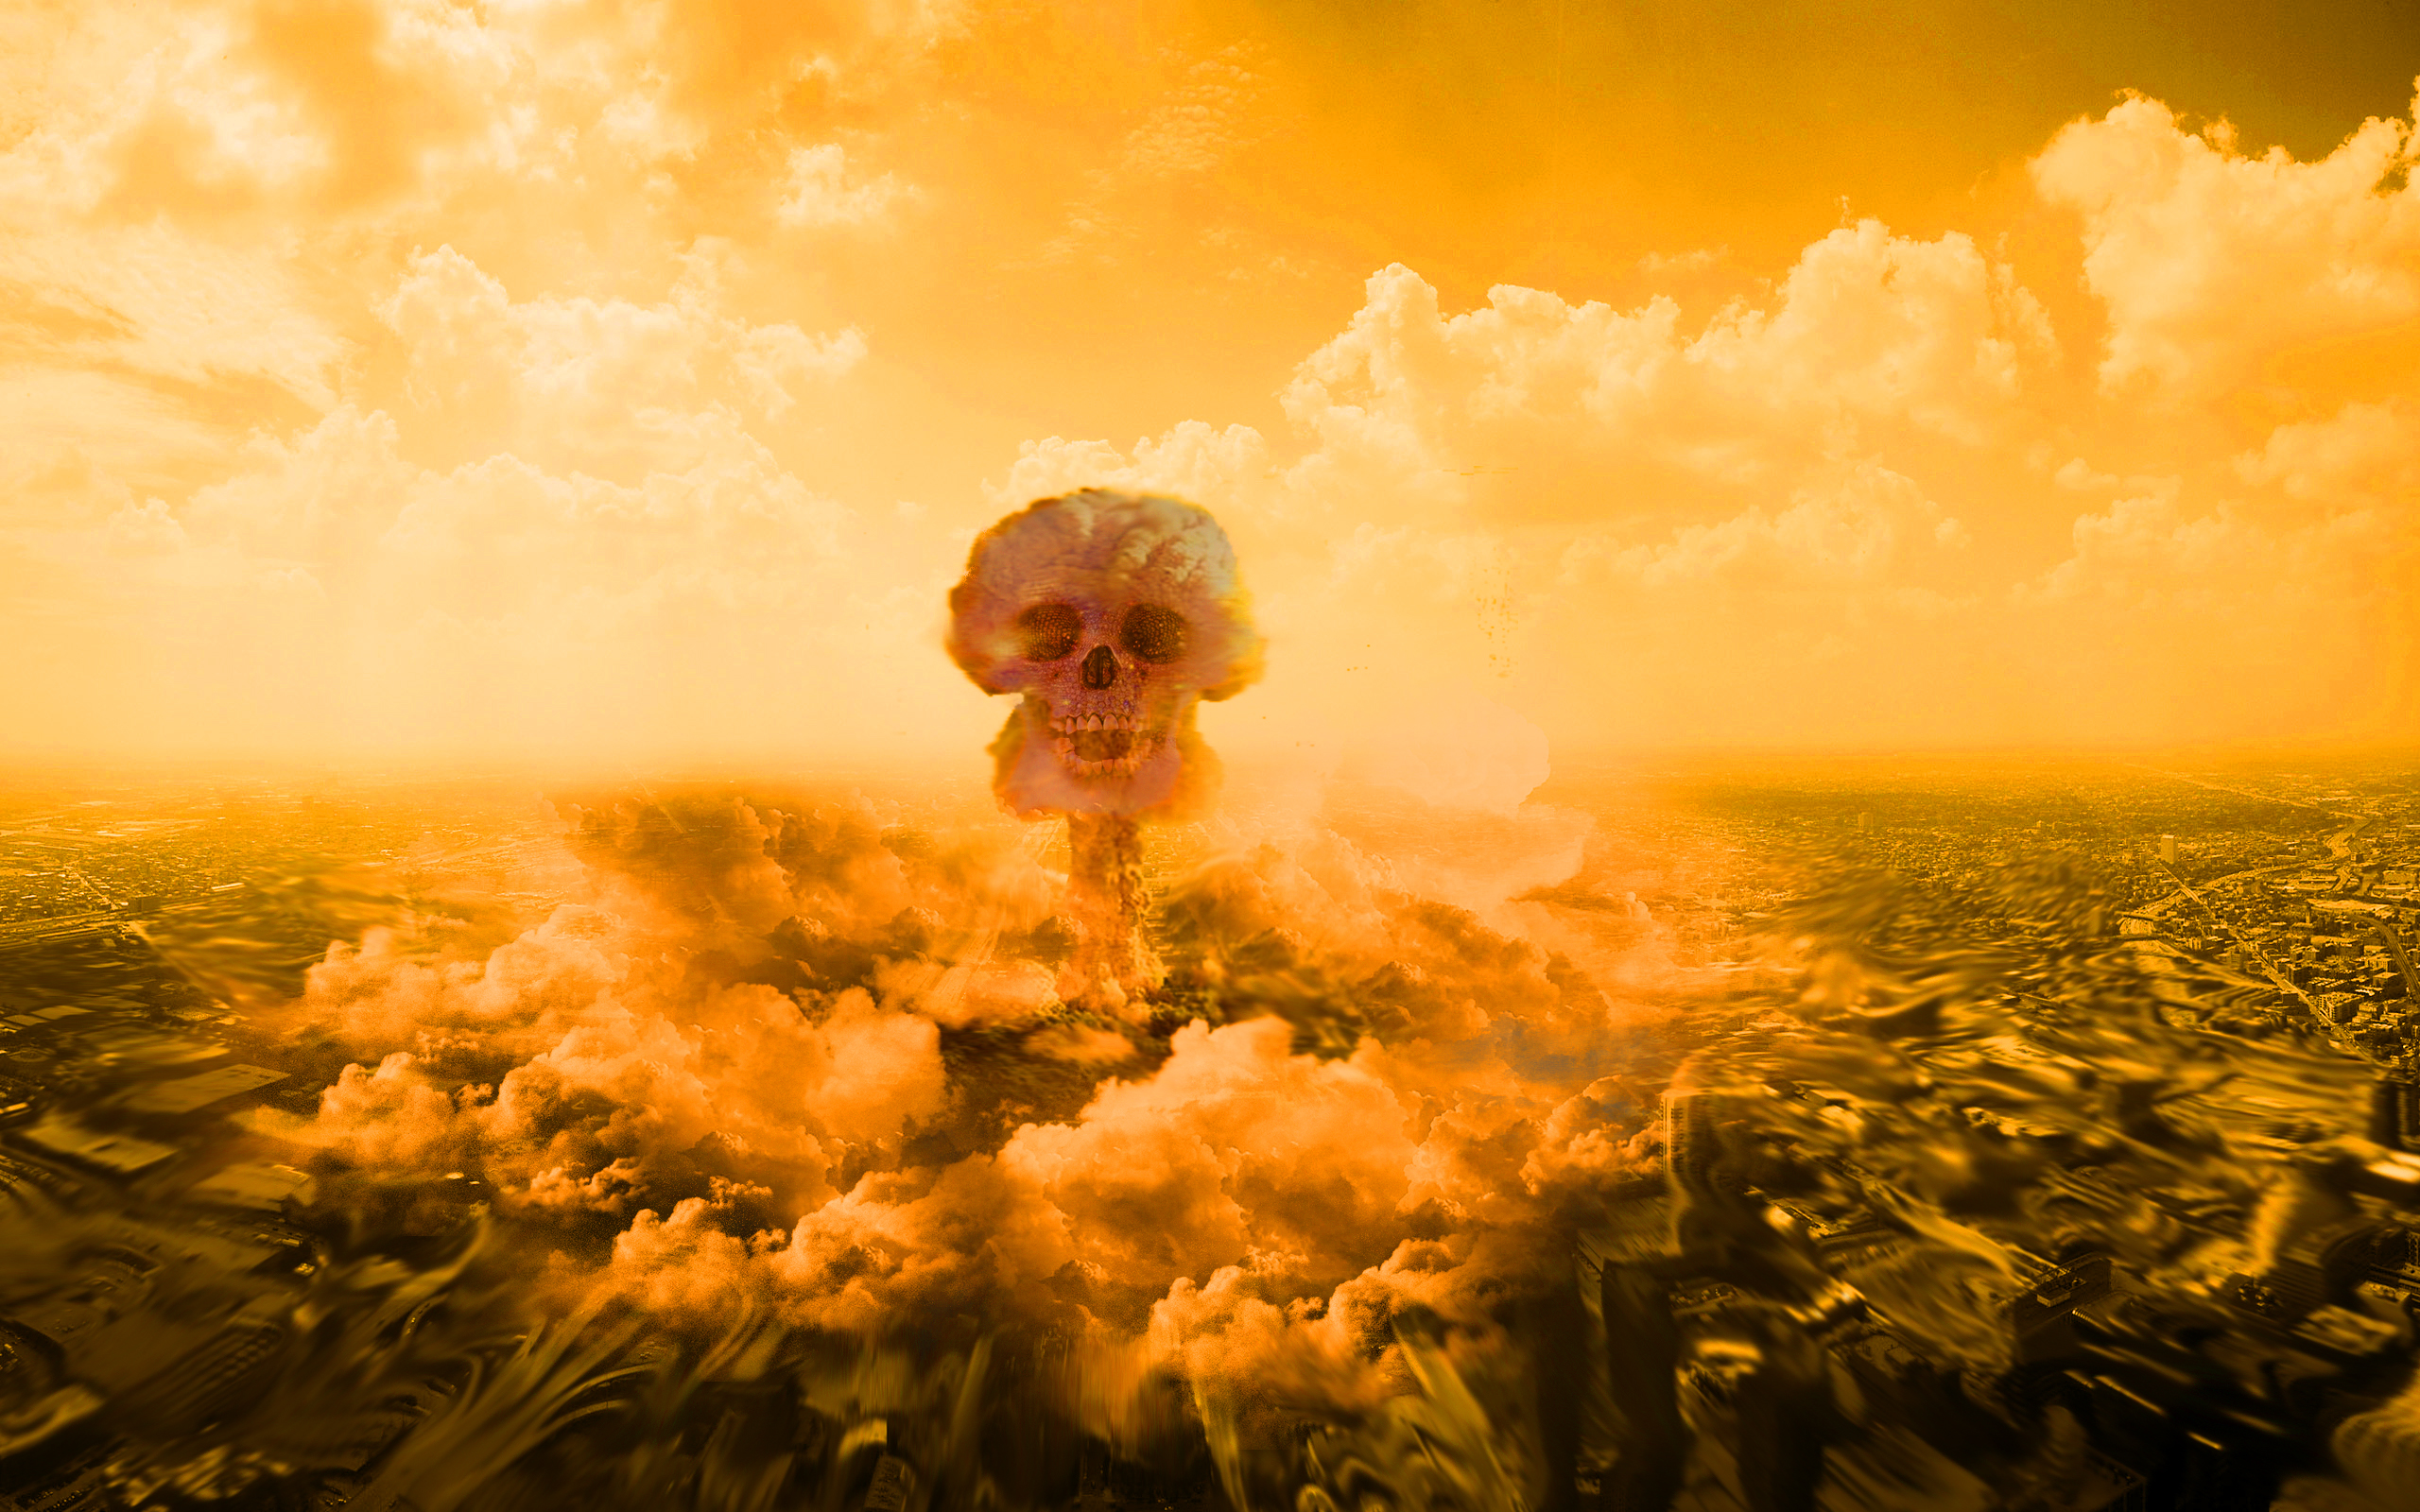 skulls, digital art, nuclear explosions, photo manipulation - desktop wallpaper